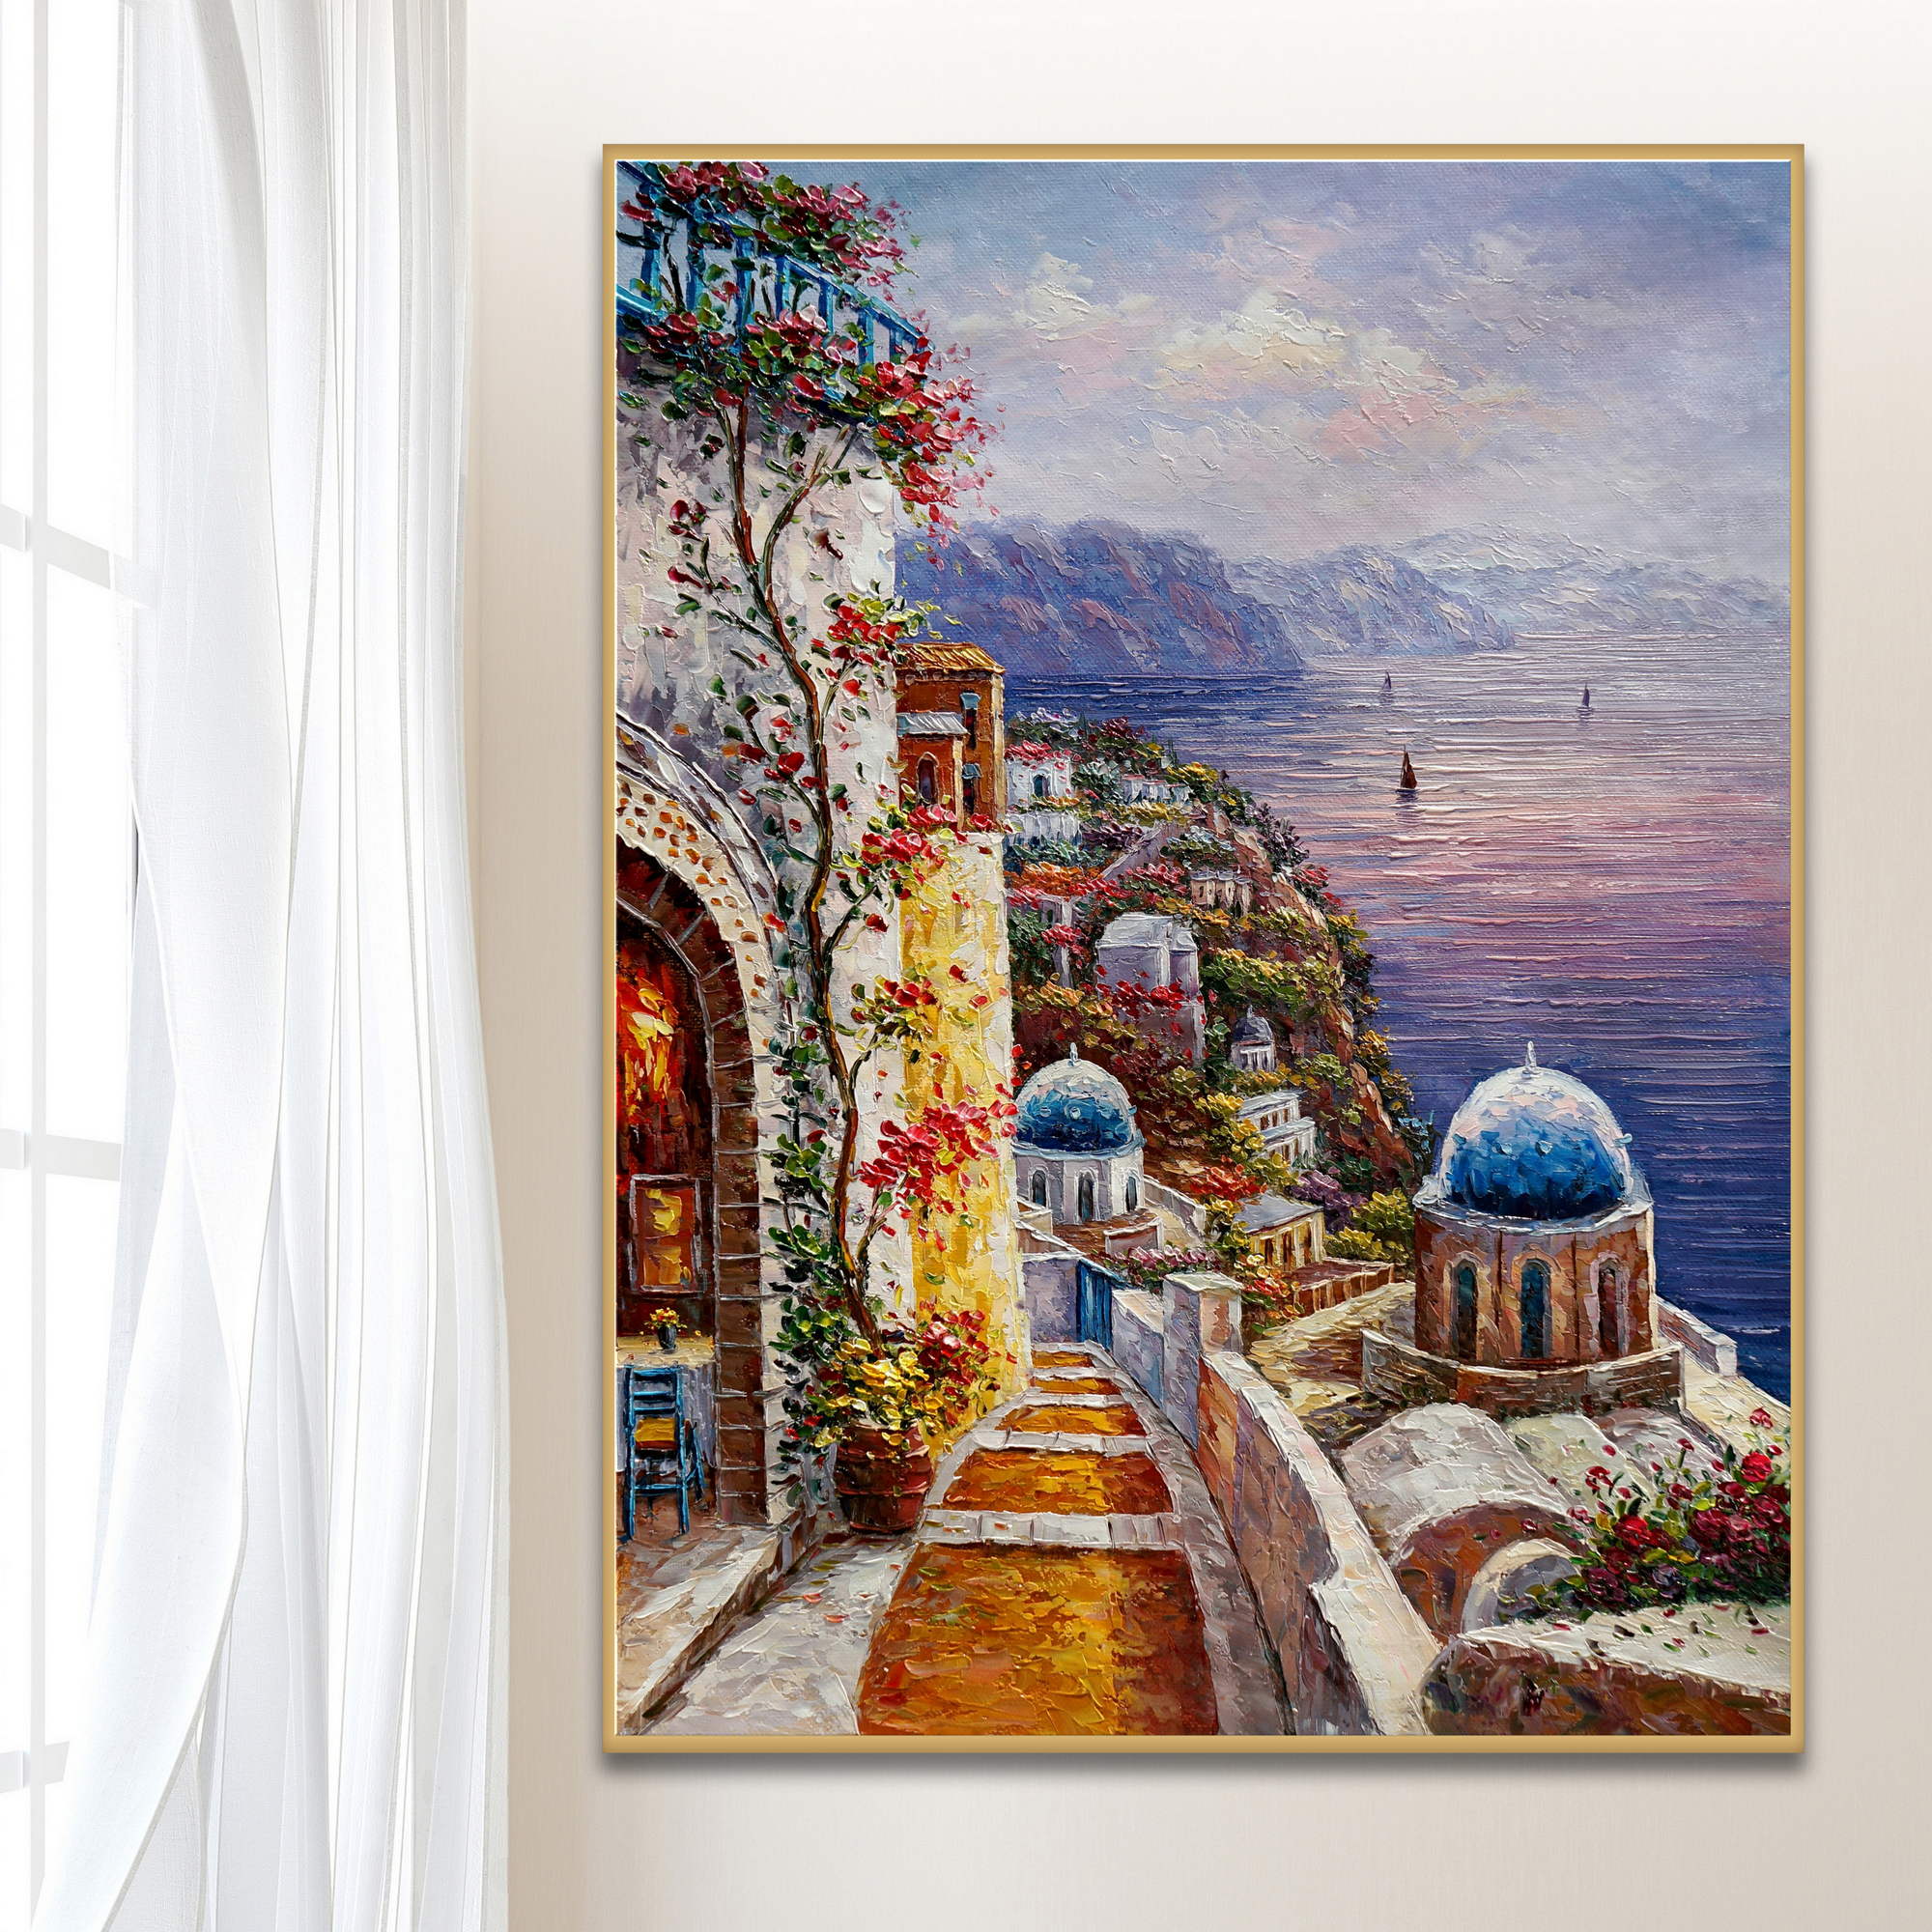 Dipinto di uno scorcio di Santorini con la sua architettura e le terrazze fiorite